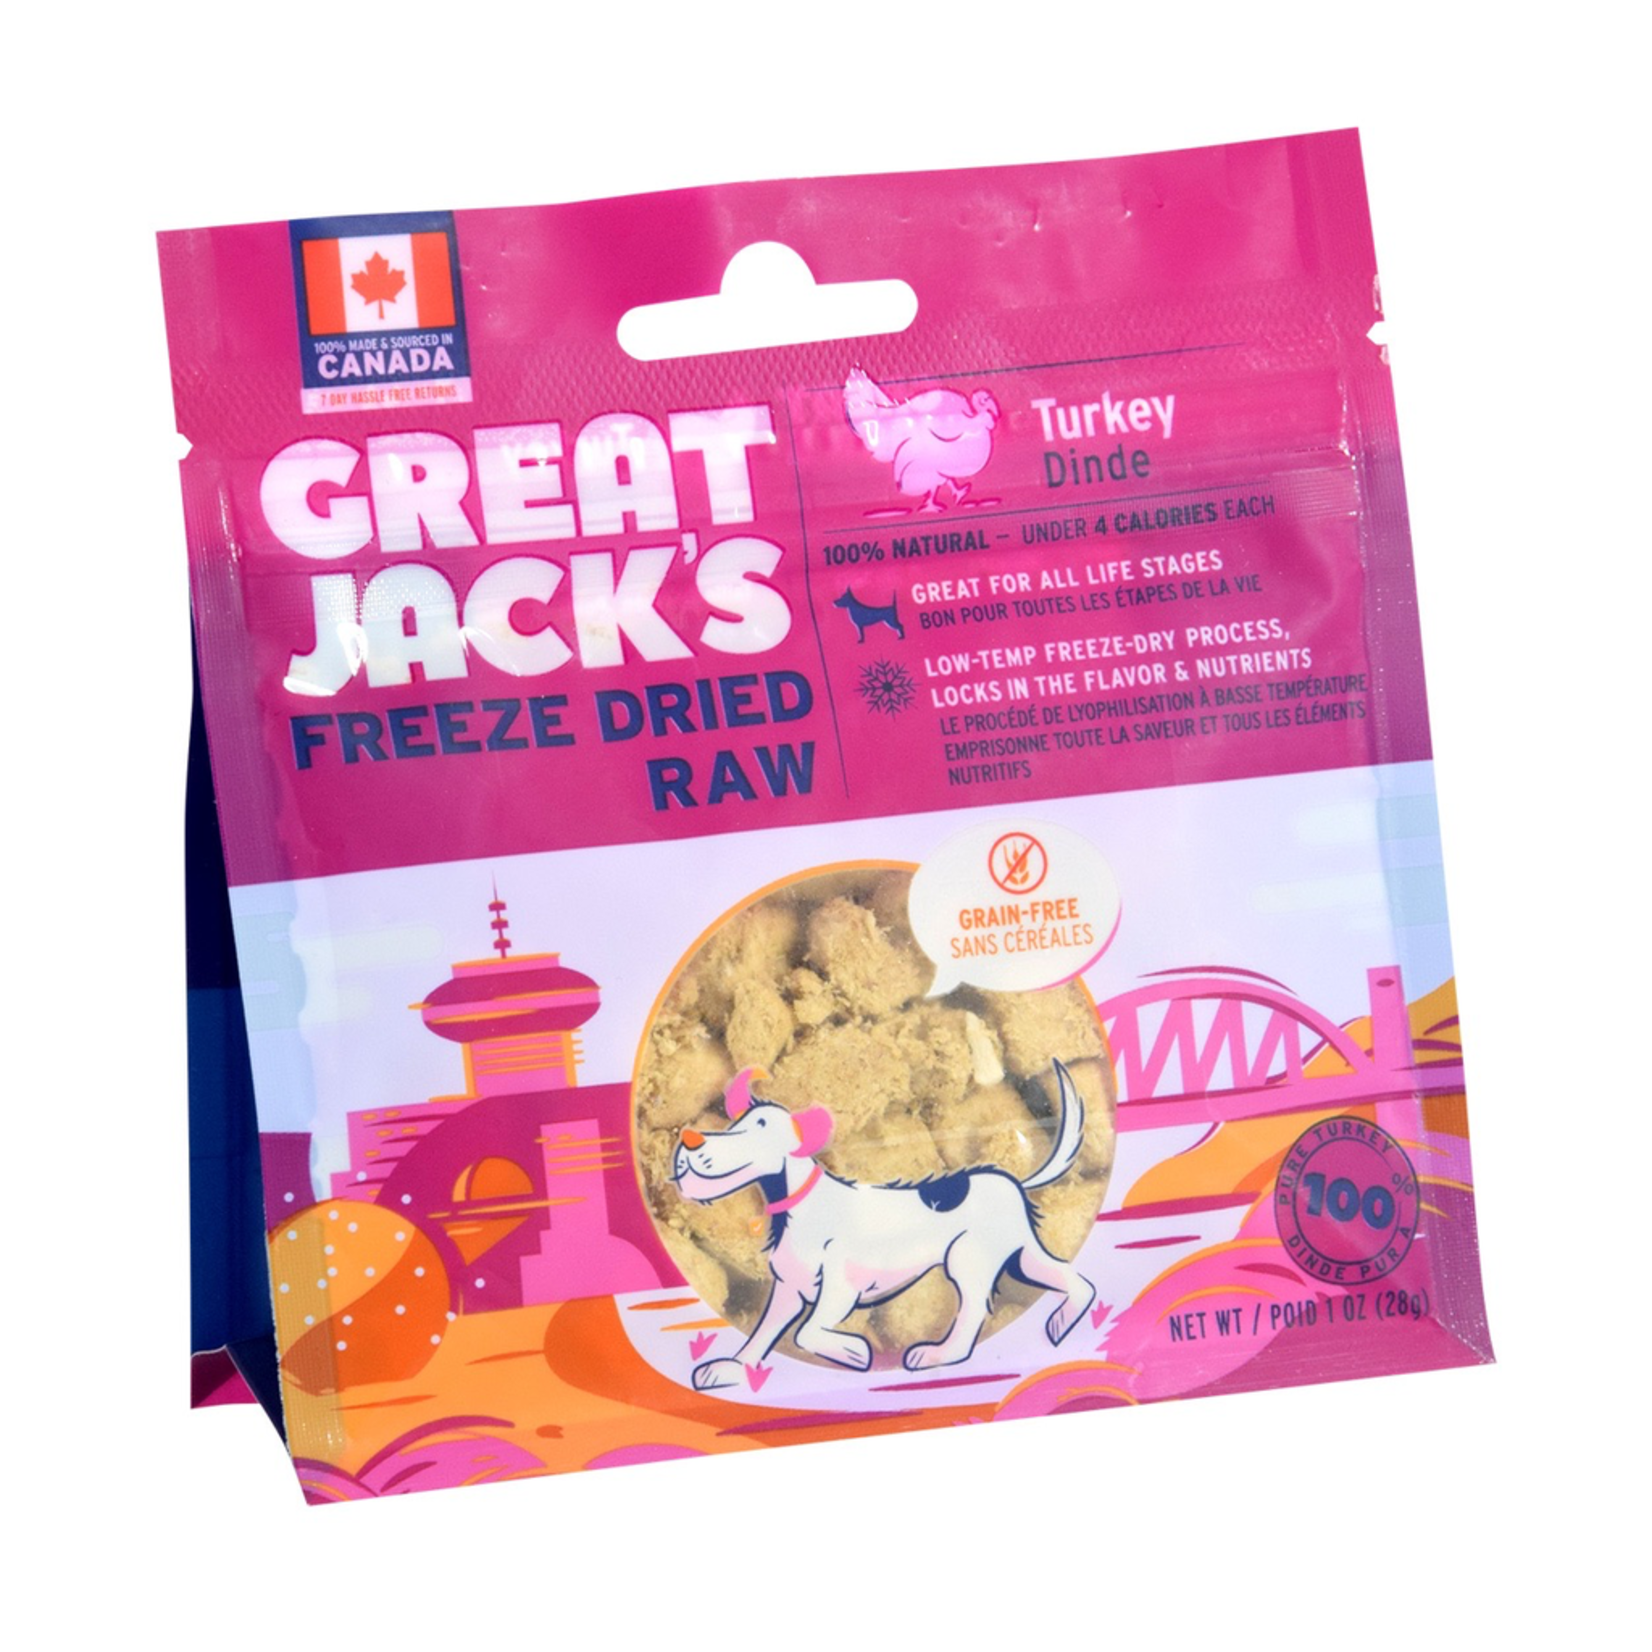 GREAT JACK'S Great Jack's Freeze Dried Raw Treats - Turkey - 1 oz